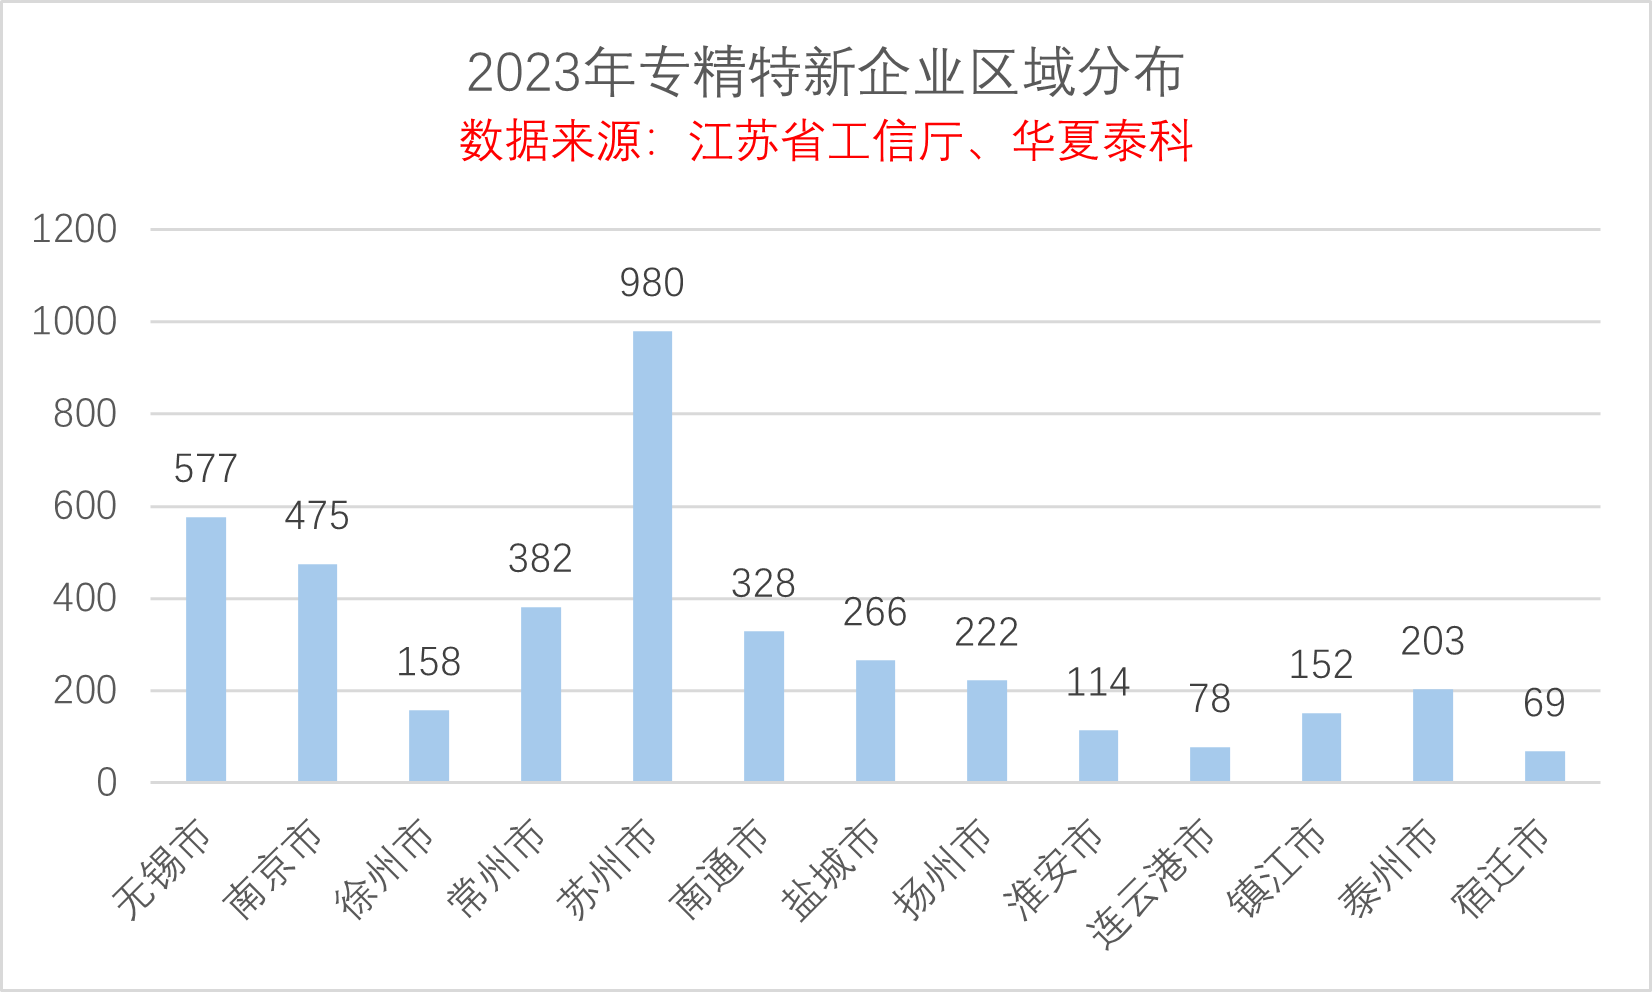 2023年江苏省专精特新企业数据分析